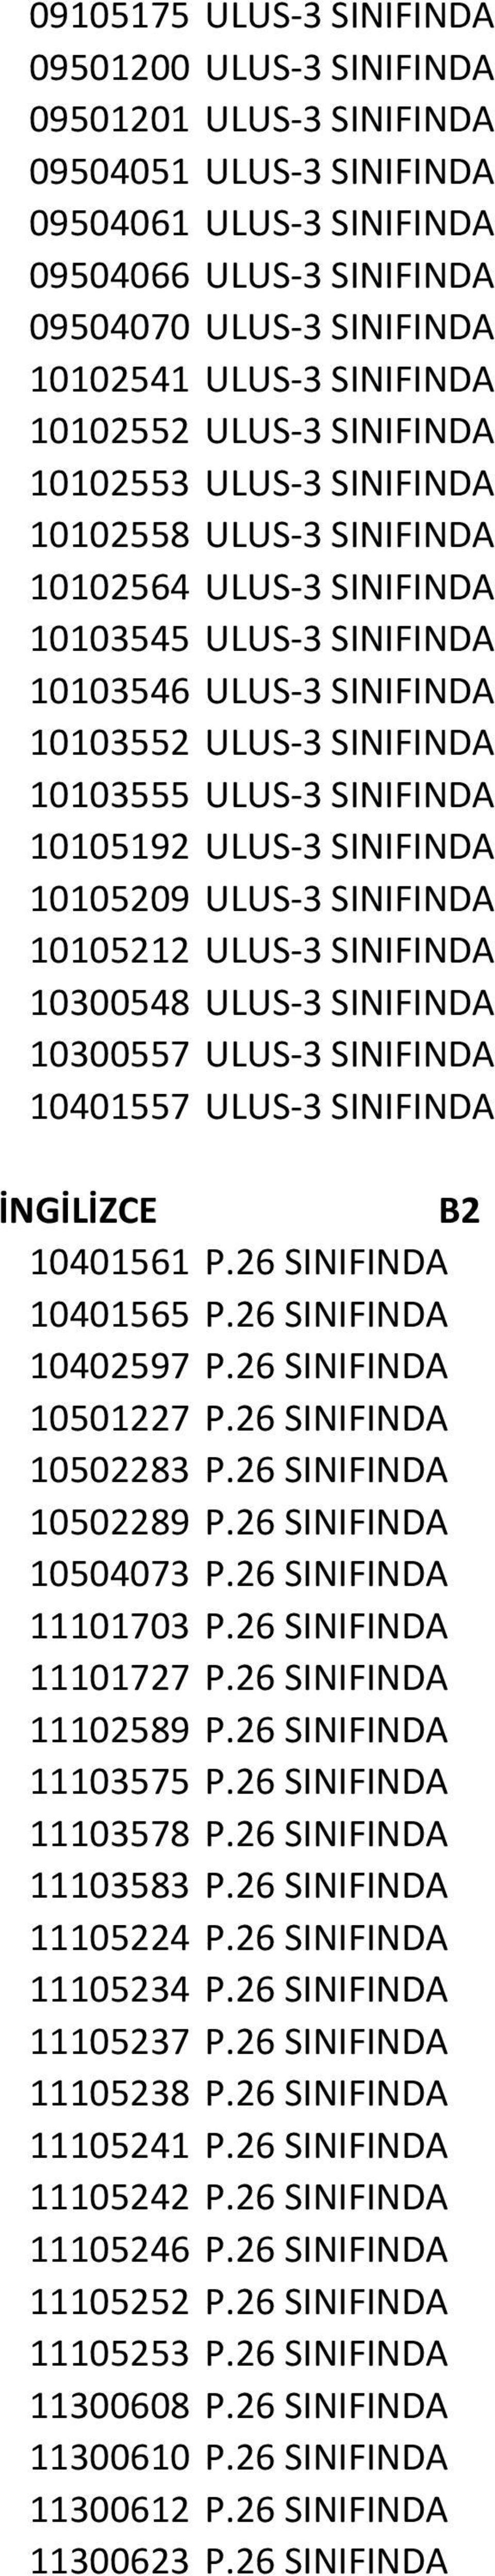 10103555 ULUS-3 SINIFINDA 10105192 ULUS-3 SINIFINDA 10105209 ULUS-3 SINIFINDA 10105212 ULUS-3 SINIFINDA 10300548 ULUS-3 SINIFINDA 10300557 ULUS-3 SINIFINDA 10401557 ULUS-3 SINIFINDA B2 10401561 P.